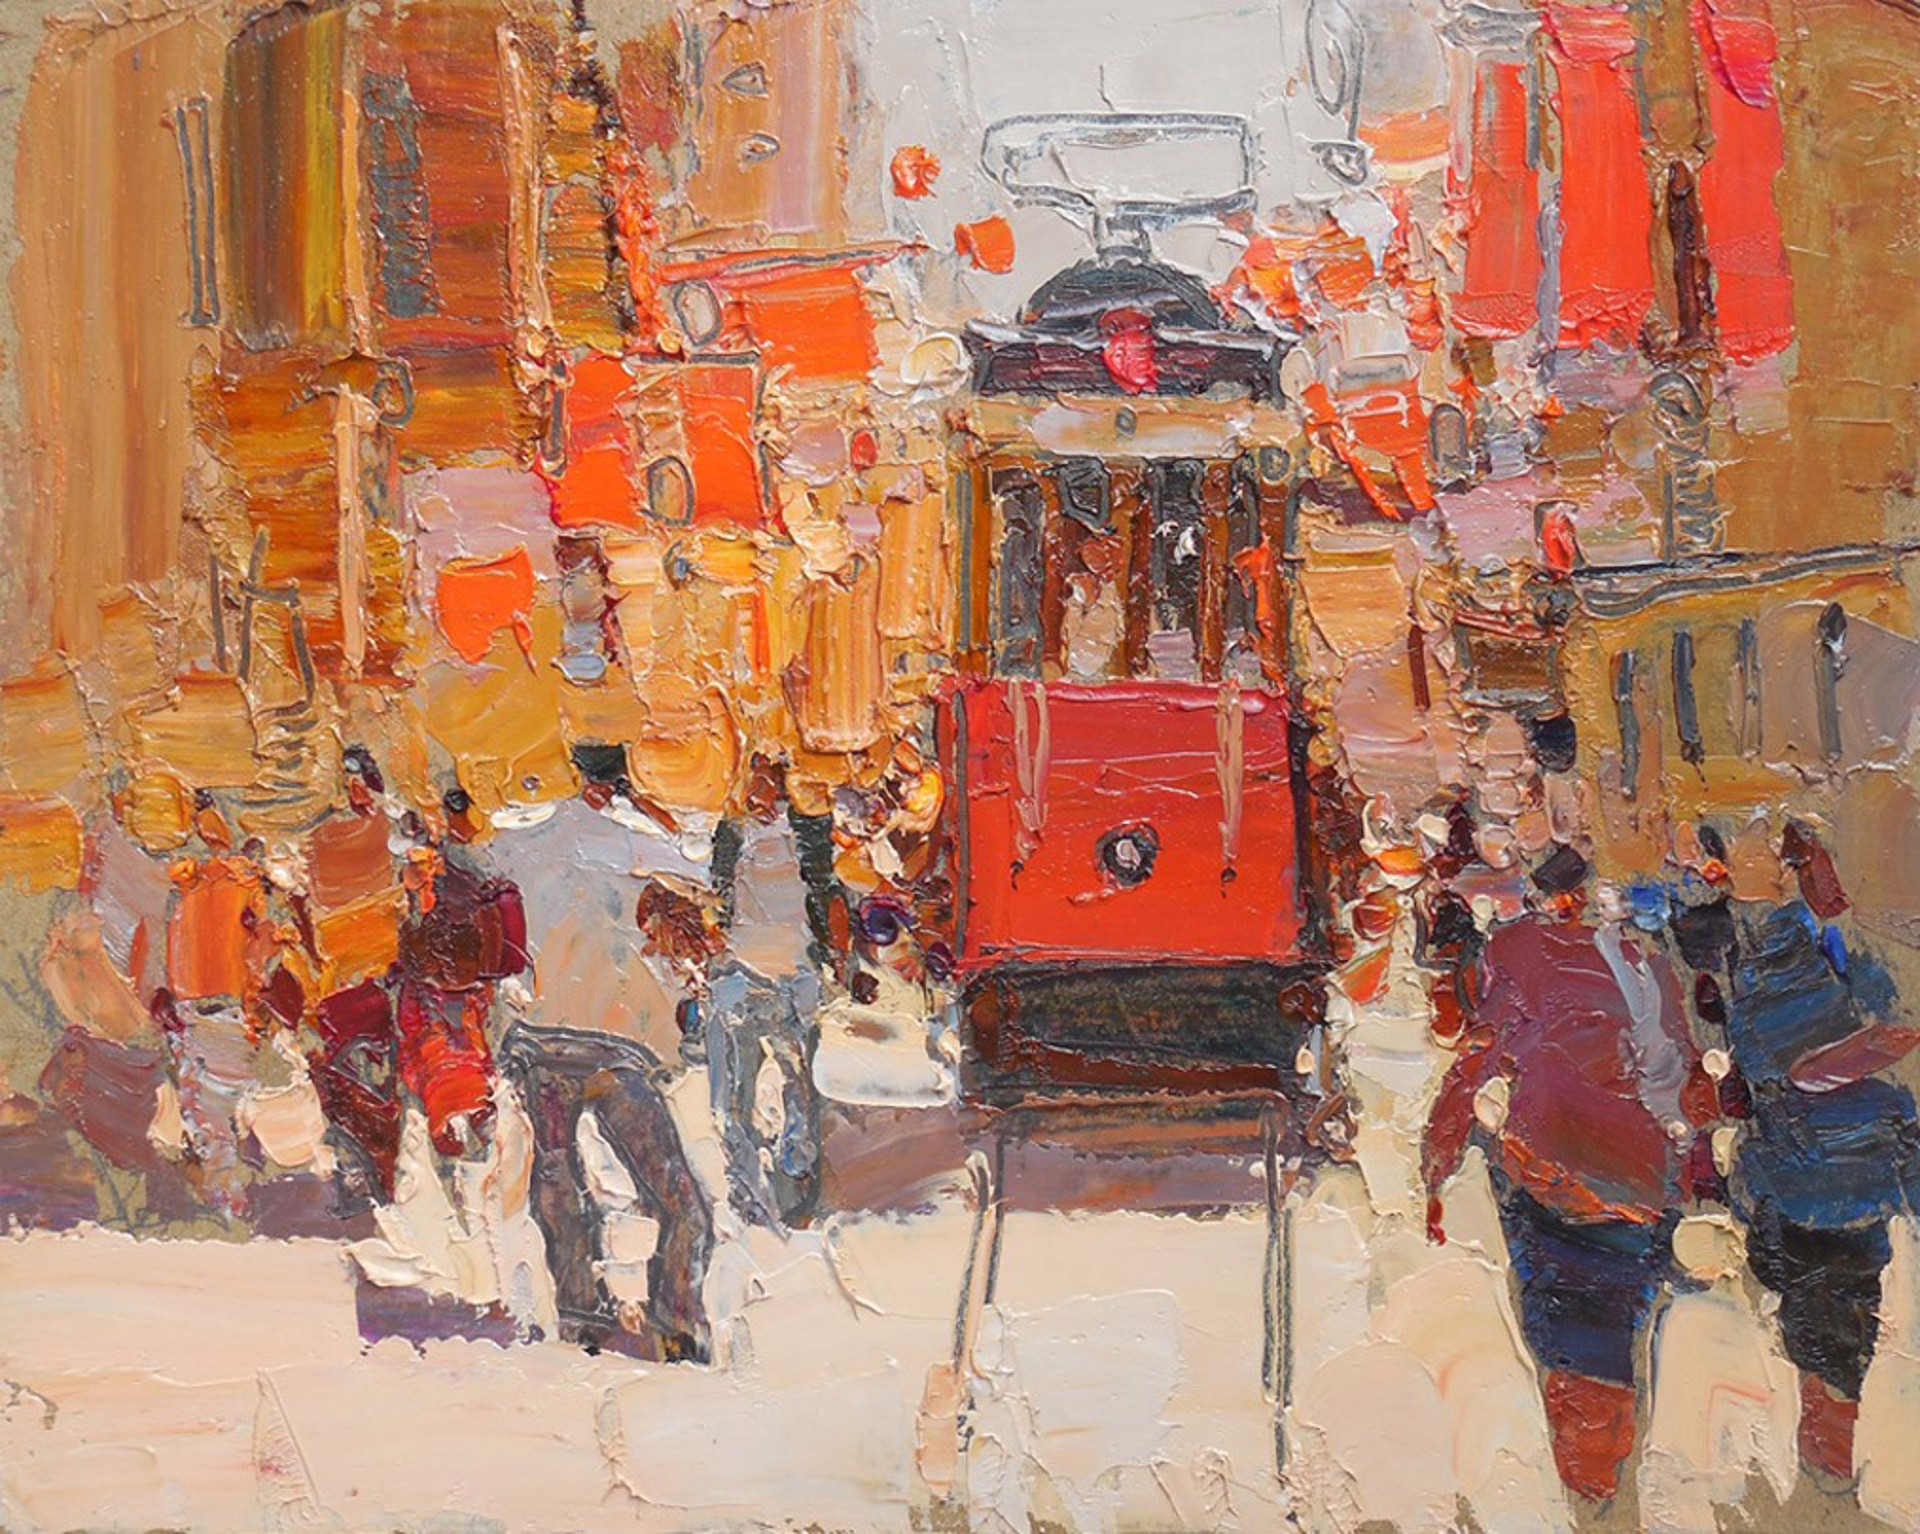 Trolley by Daniil Volkov